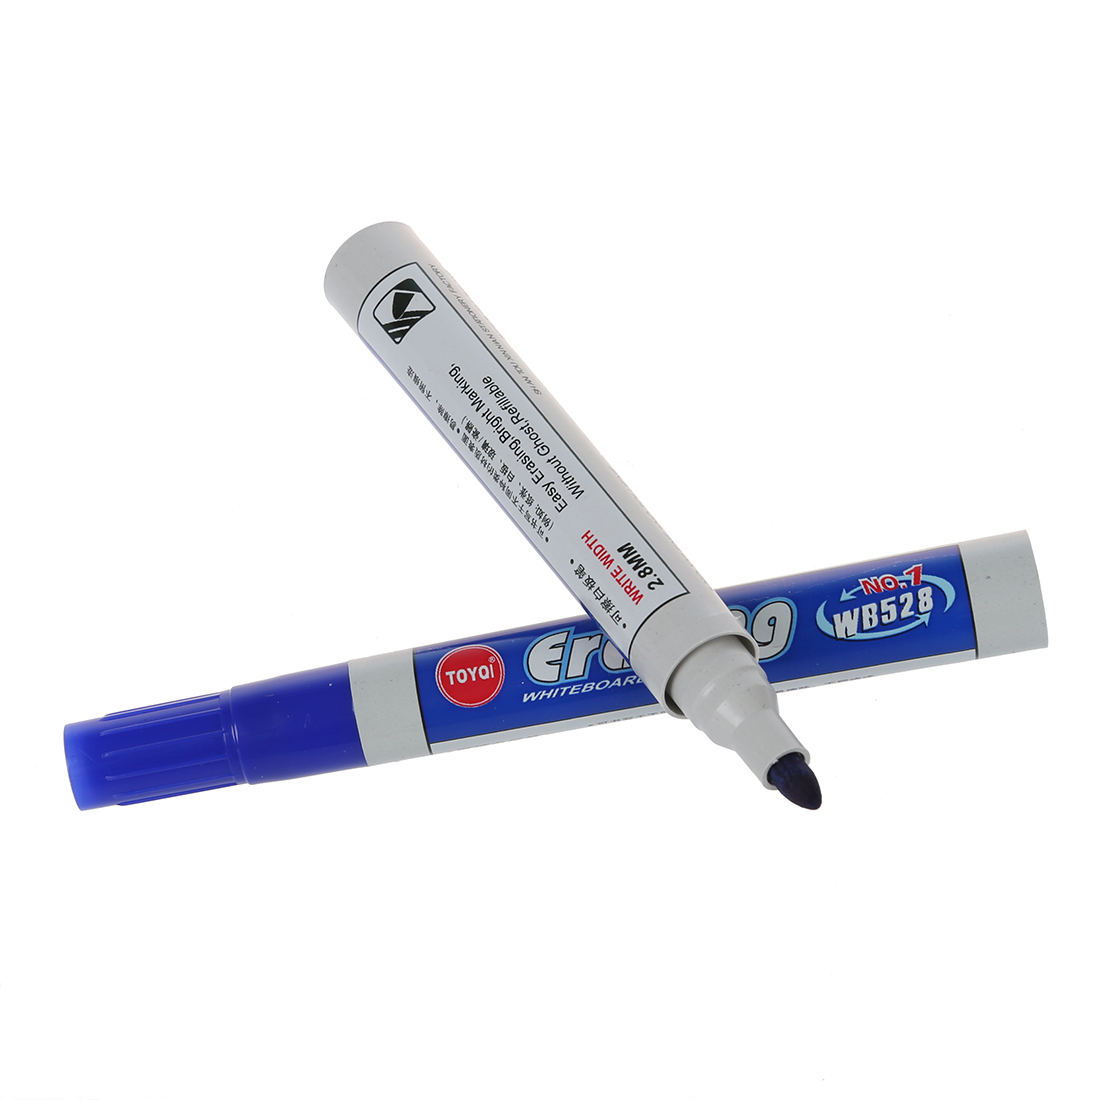 2 PCS of 10 x Board Marker Whiteboard Marker Pen Washable Blue